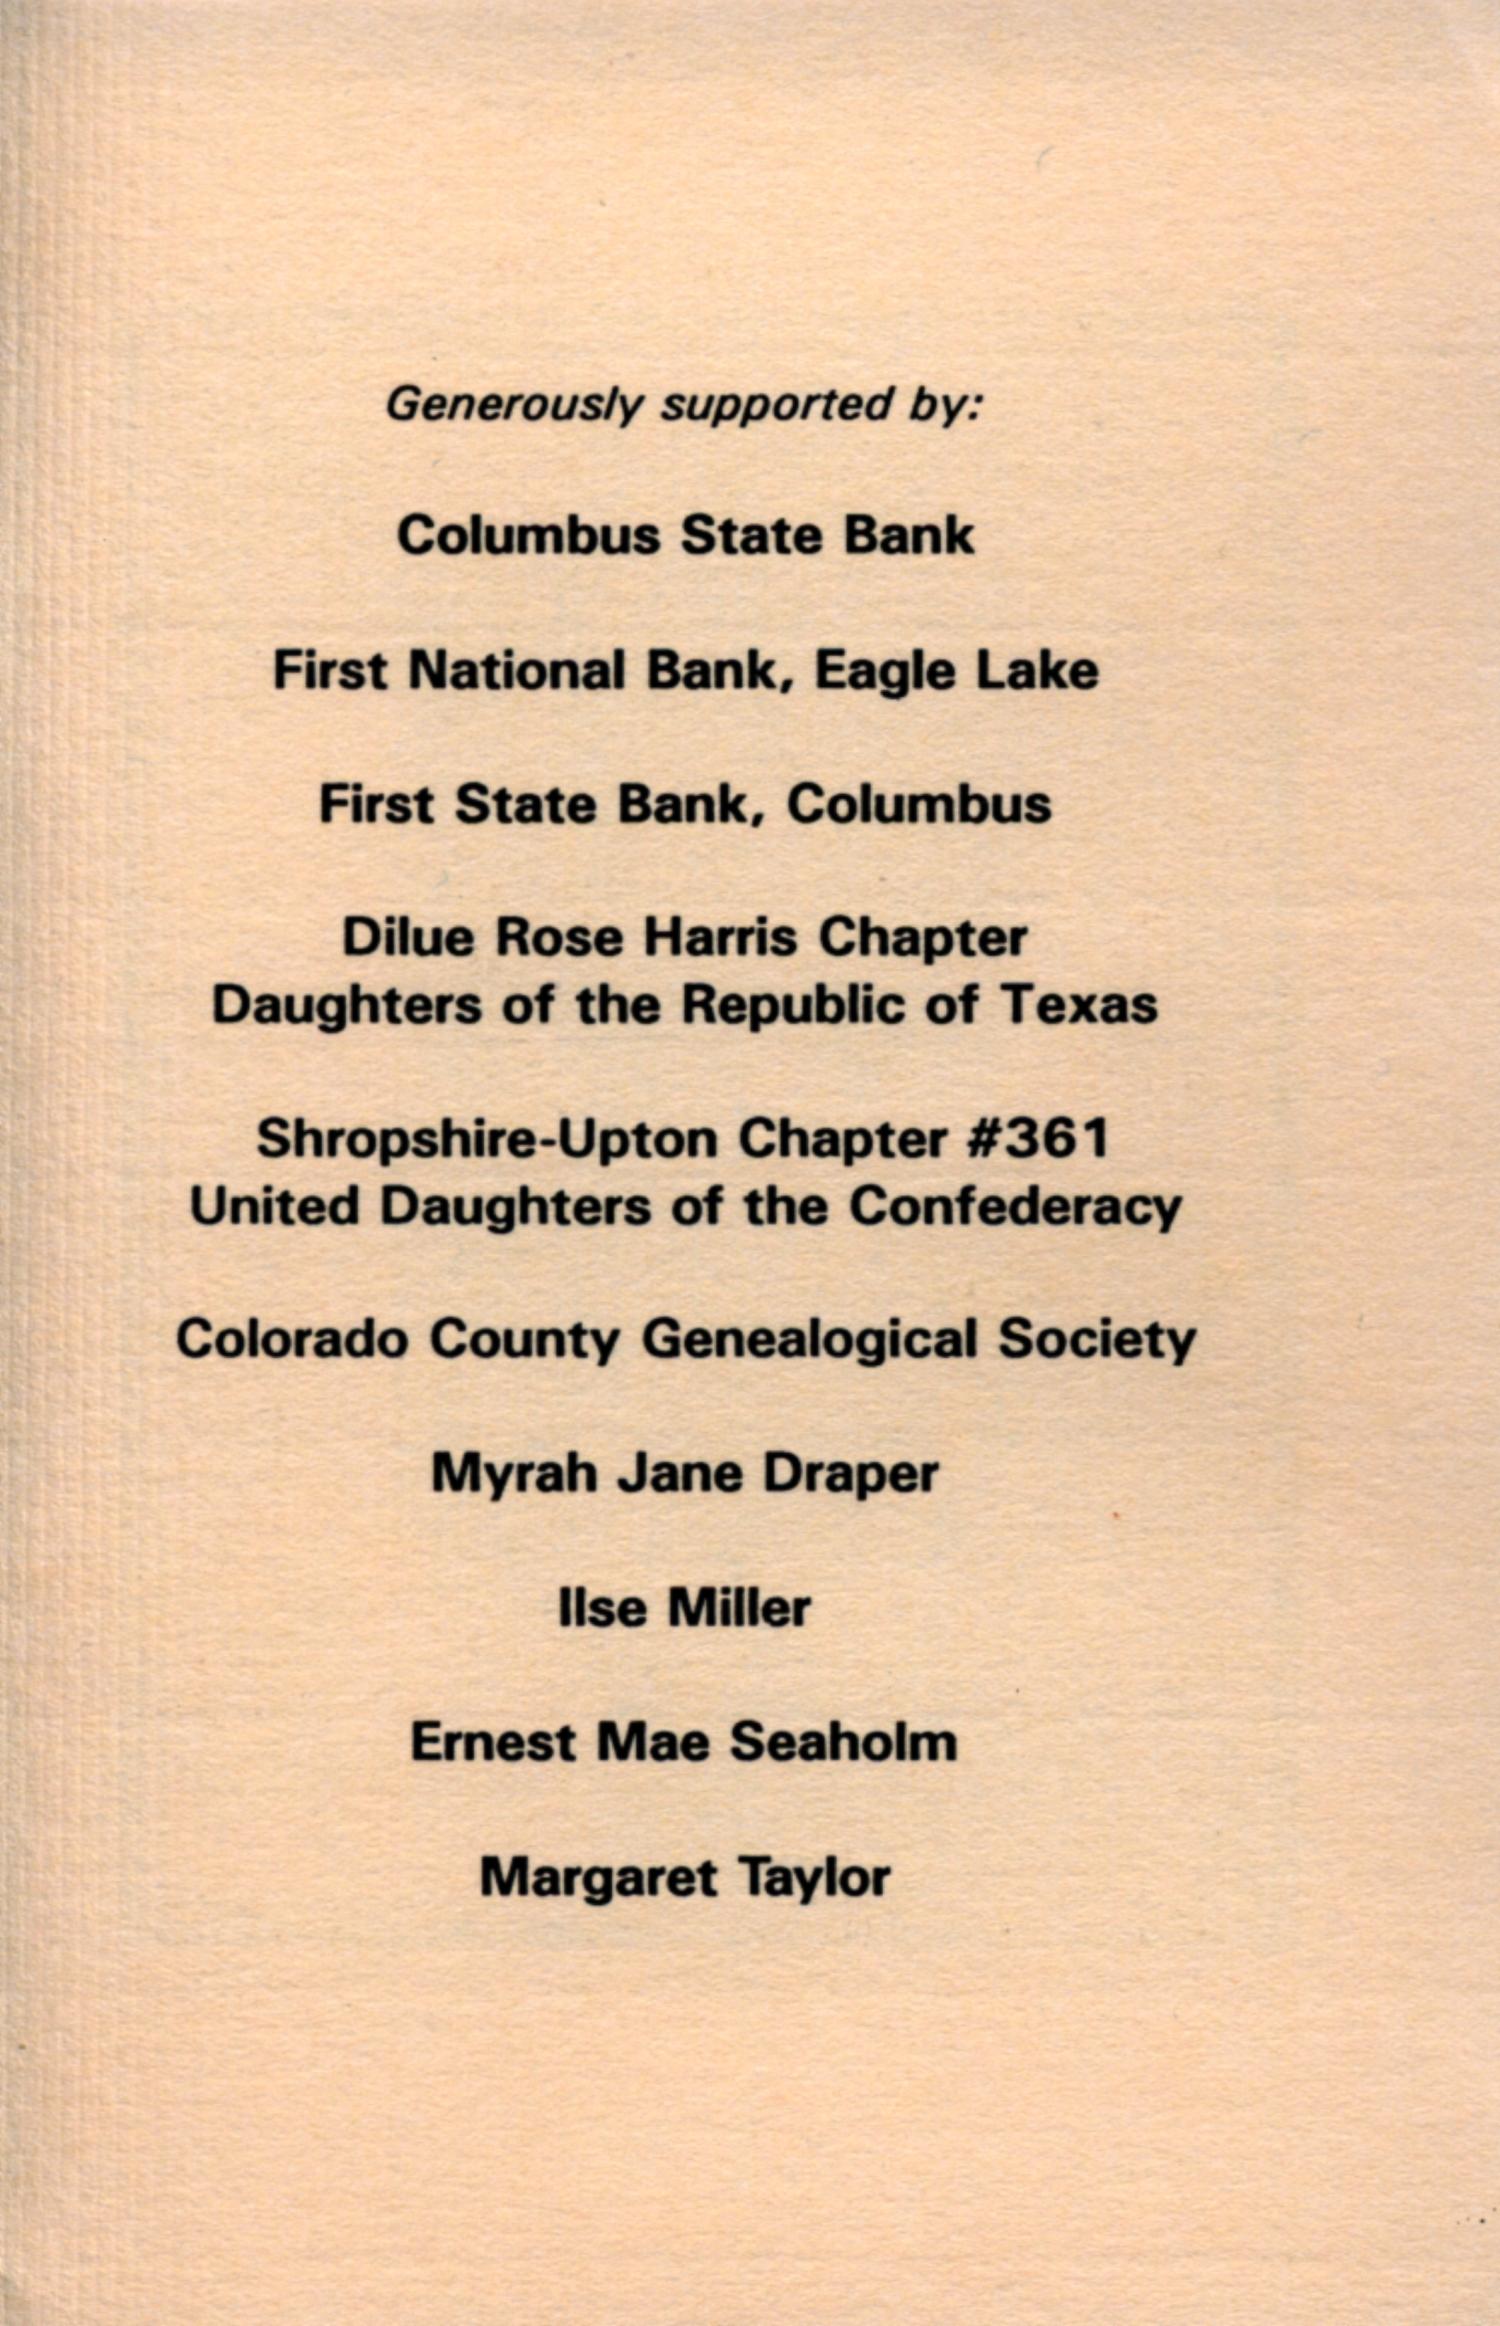 Nesbitt Memorial Library Journal, Volume 1, Number 10, September 1991
                                                
                                                    Back Inside
                                                